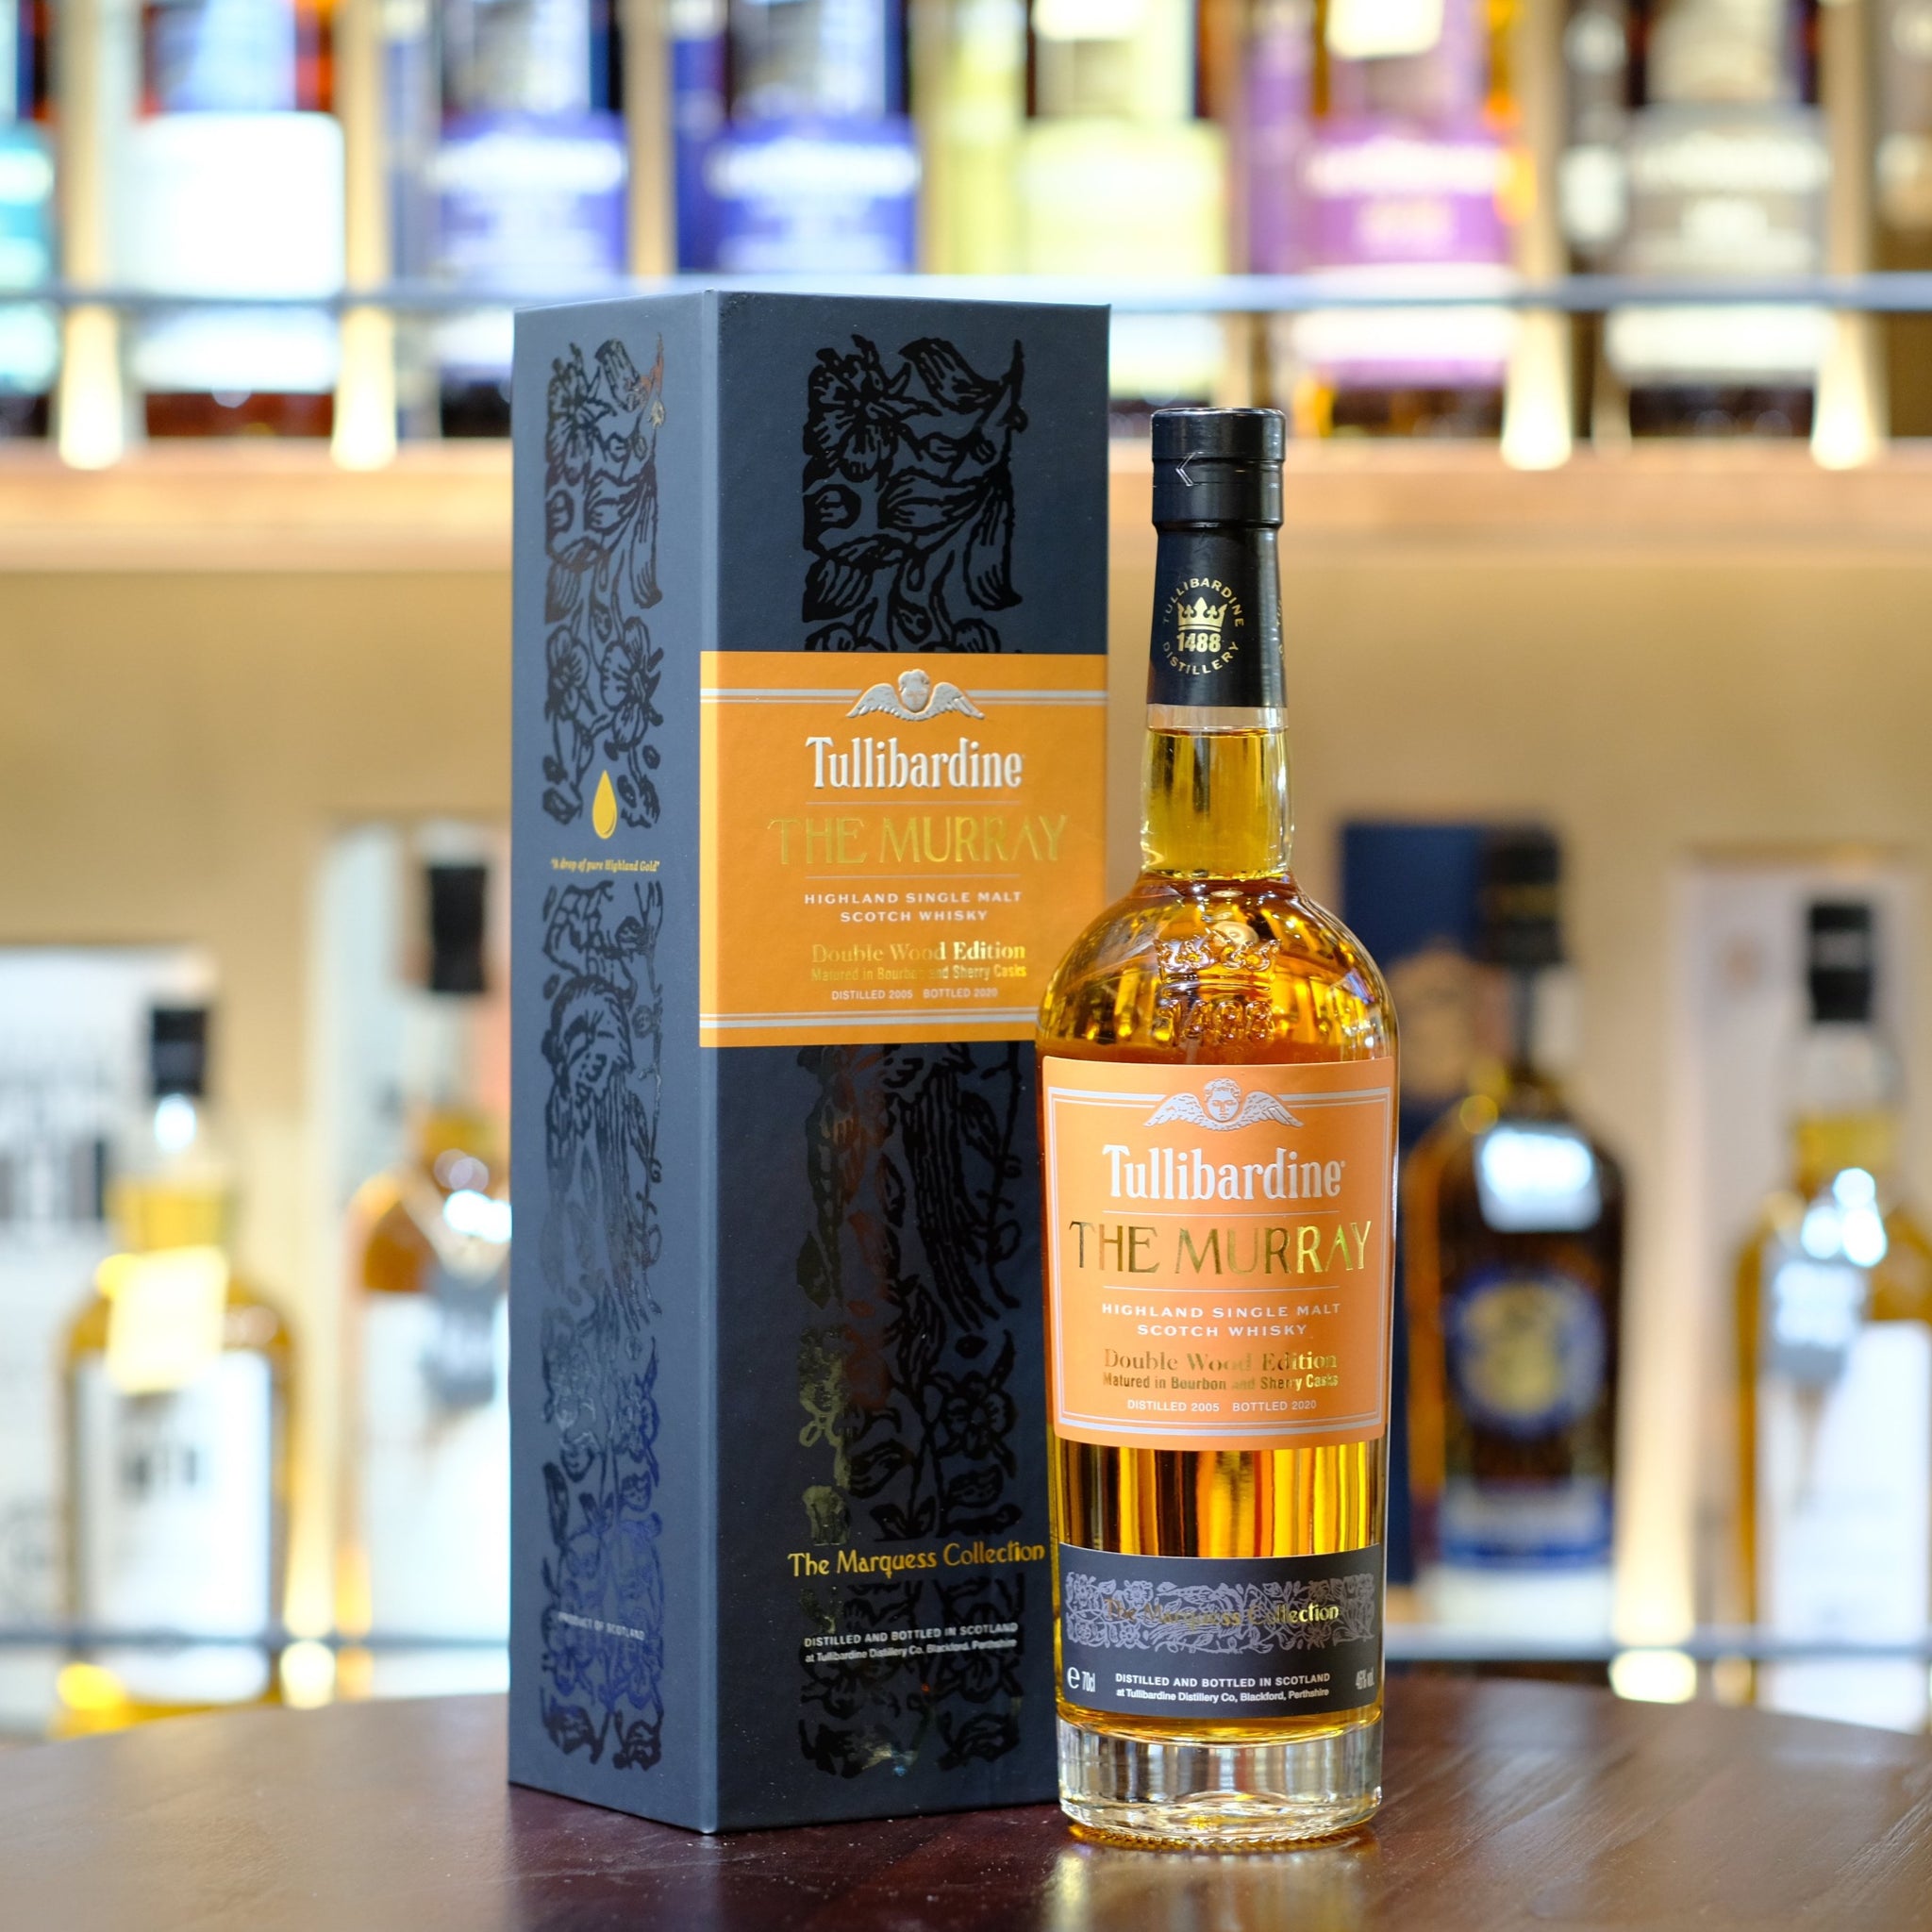 Tullibardine The Murray Double Wood Edition 2005-2020 Single Malt Scotch Whisky